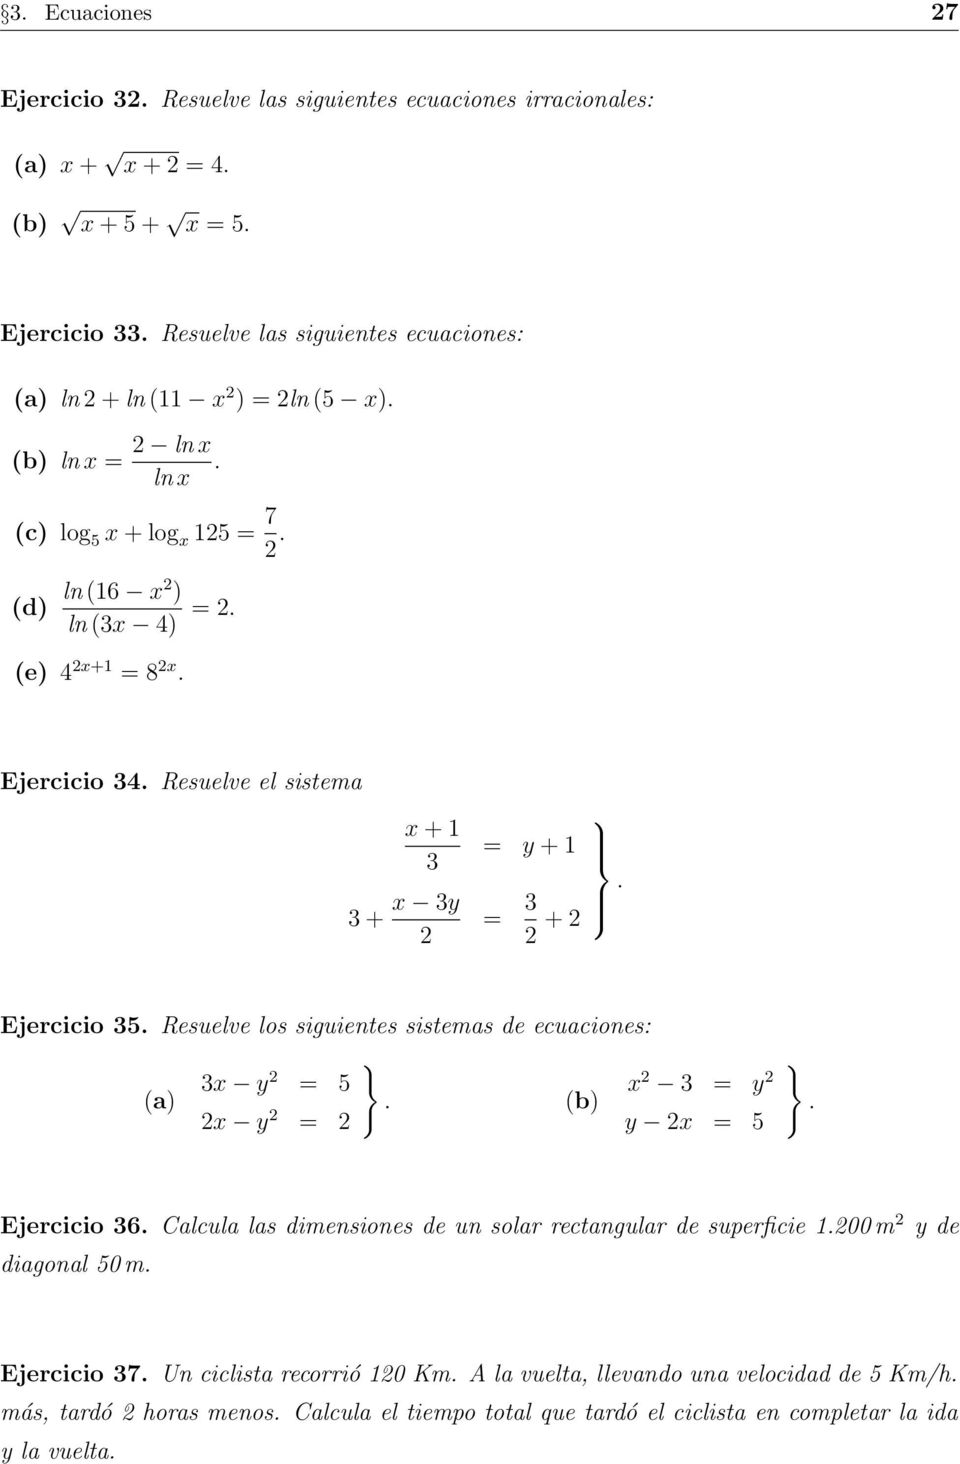 los siguientes sistemas de ecuaciones: } 3x y = 5 x 3 = y (a) (b) x y = y x = 5 } Ejercicio 36 Calcula las dimensiones de un solar rectangular de superficie 100 m y de diagonal 50 m